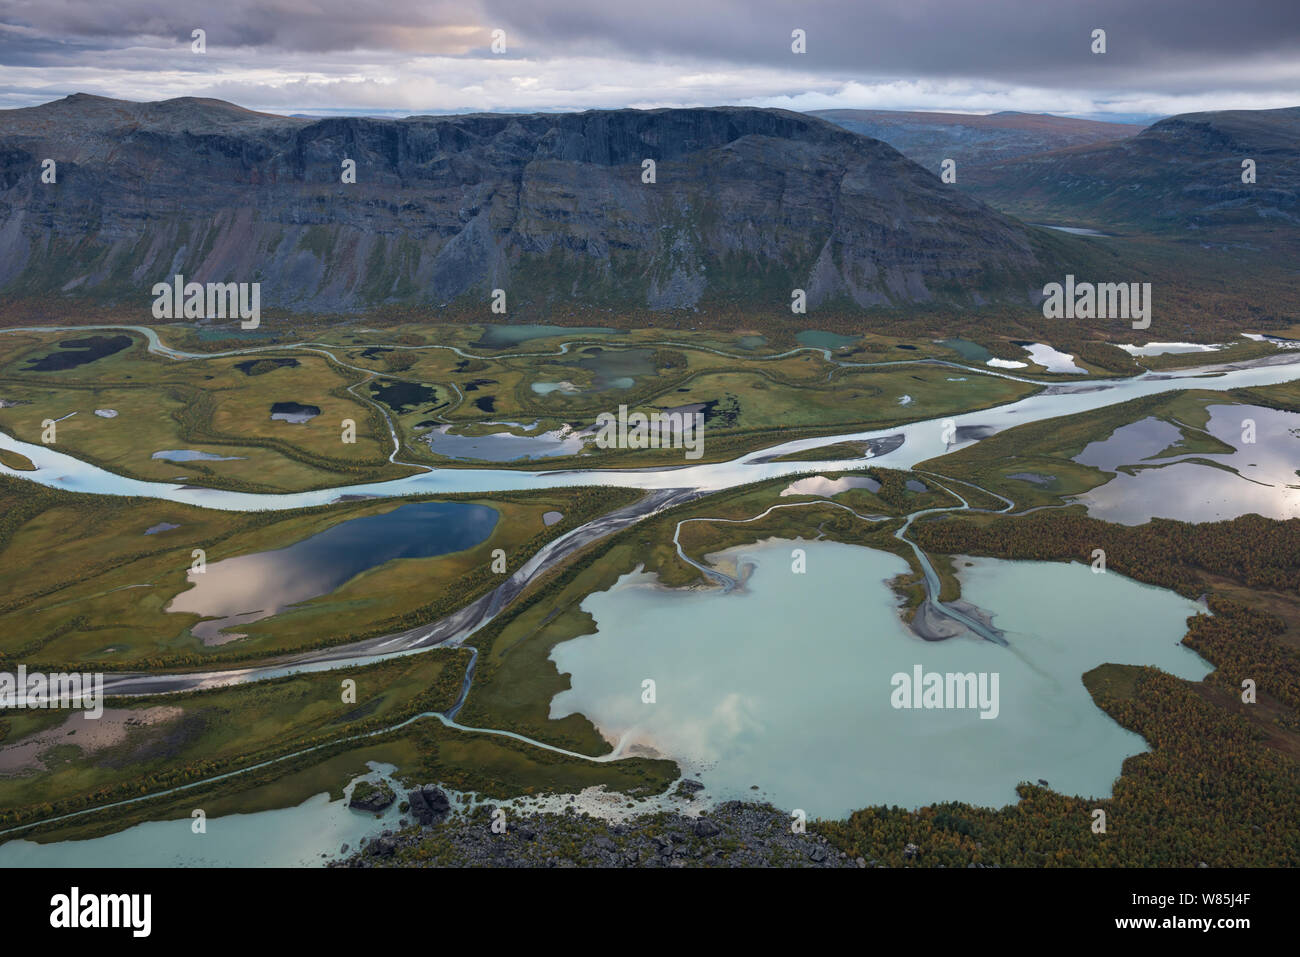 Le delta du Laitaure dans le Sarek National Park. Laponia Patrimoine mondial, en Laponie suédoise, la Suède. Septembre 2009. Banque D'Images